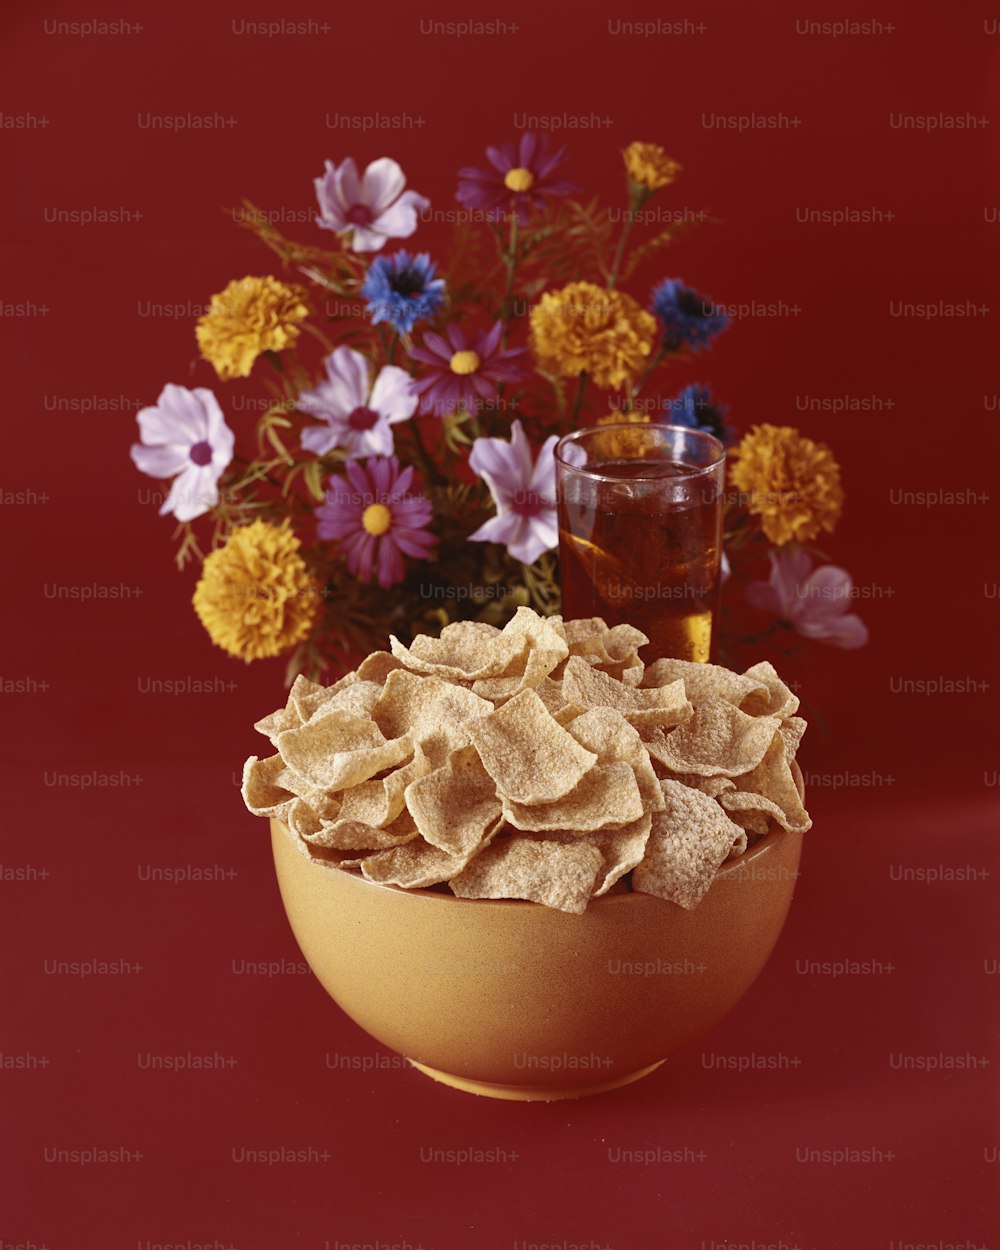 eine Schüssel Chips neben einer Vase mit Blumen